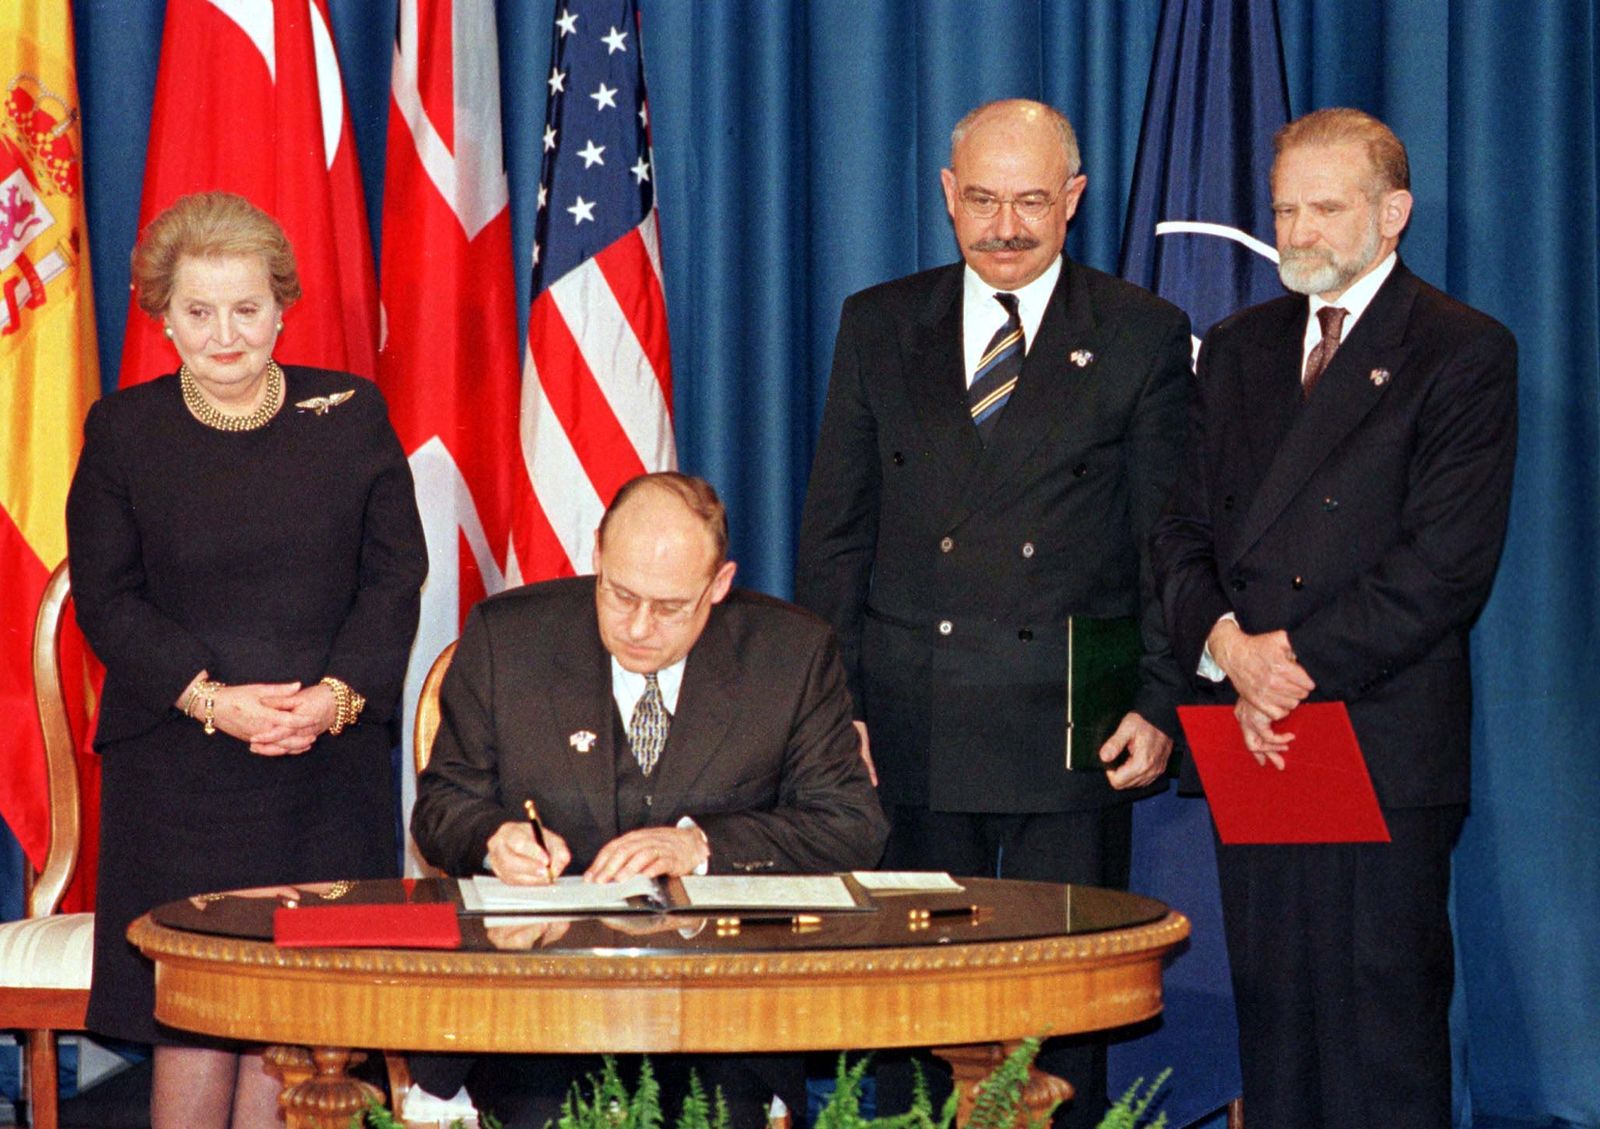 وزير خارجية جمهورية التشيك السابق يان كافان يوقع وثيقة الانضمام إلى حلف شمال الأطلسي (ناتو)، واشنطن 12 مارس 1999 - REUTERS